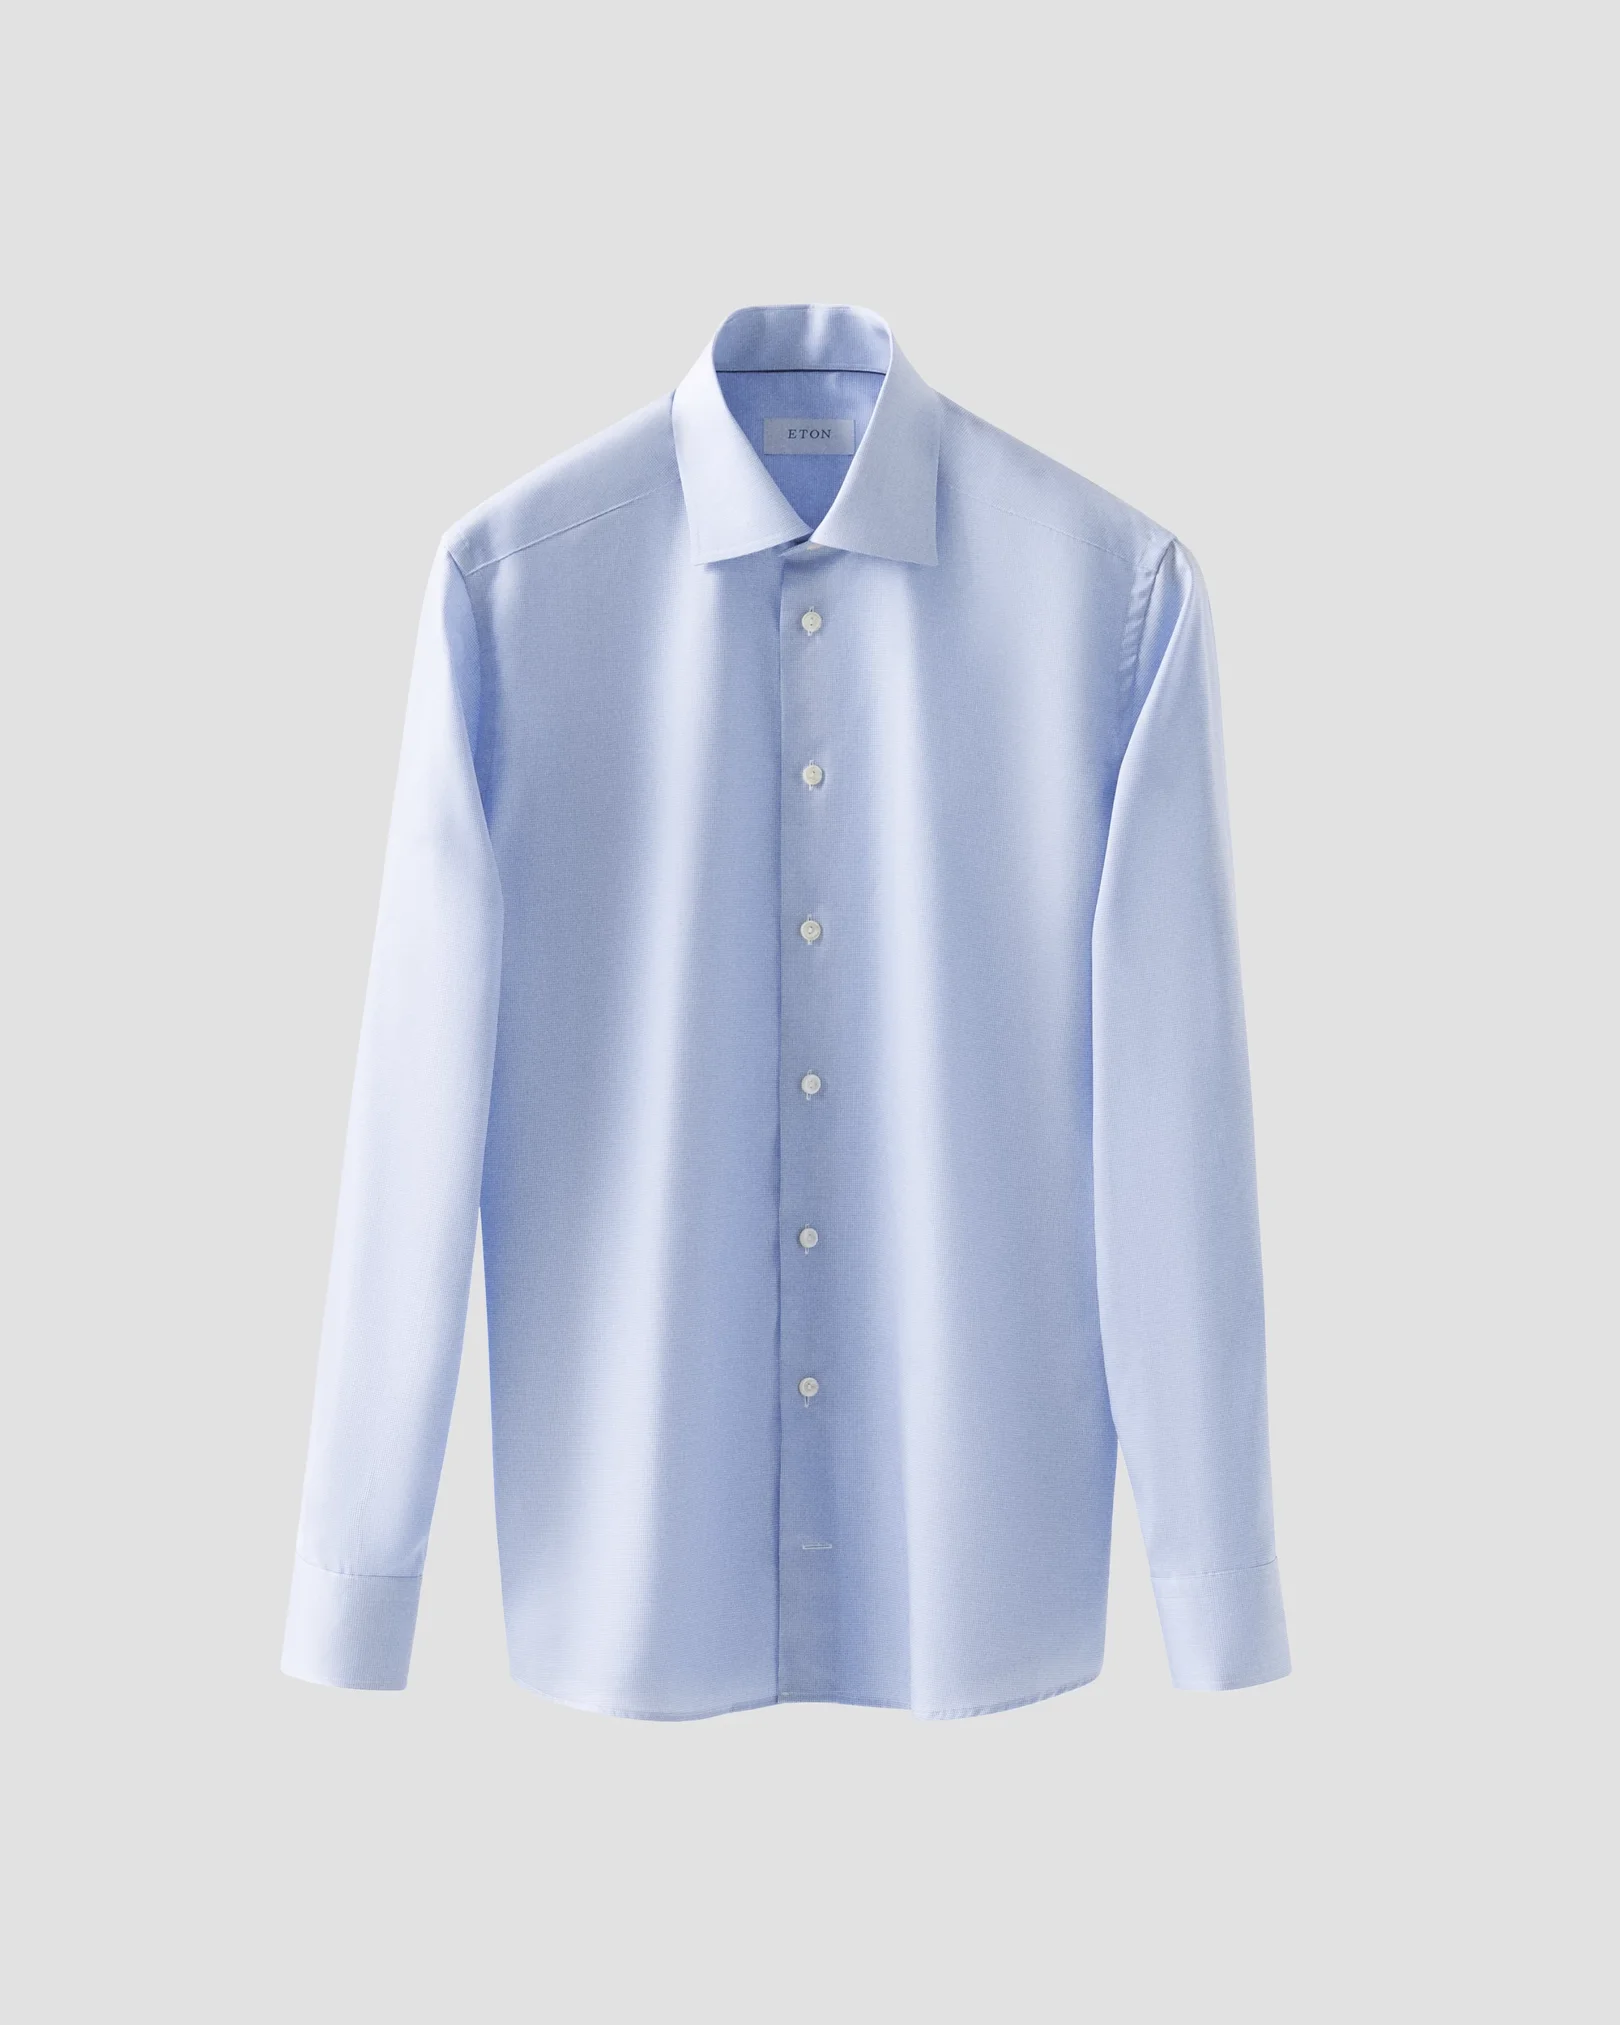 Eton - Chemise bleu clair à motifs pied-de-poule